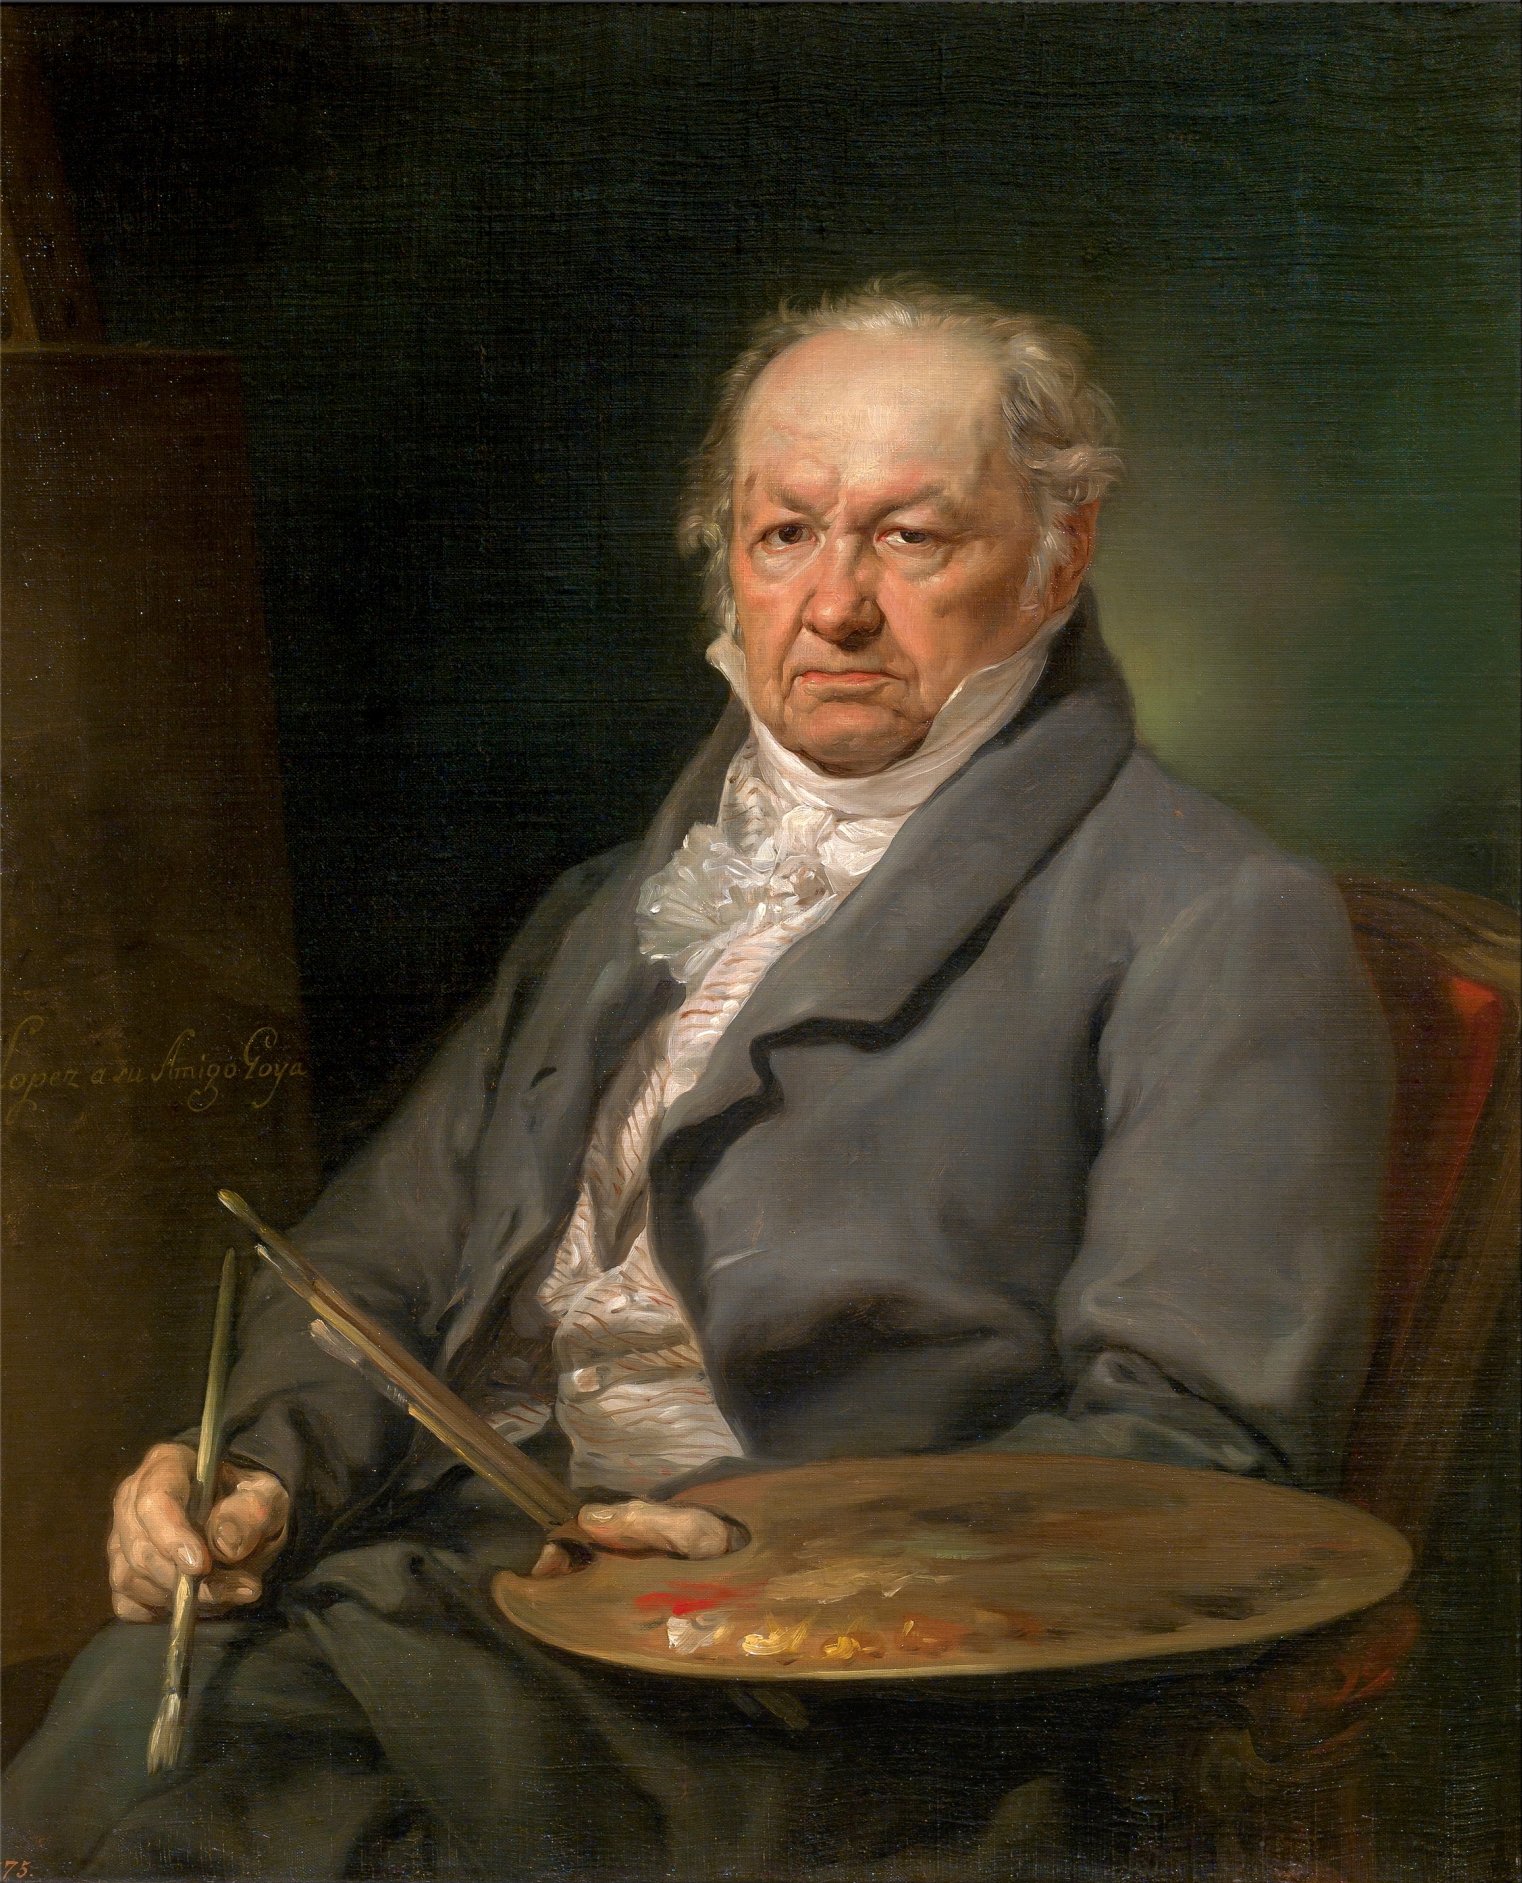 Portrait of Goya by Vicente López Portaña, c. 1826. Museo del Prado, Madrid.